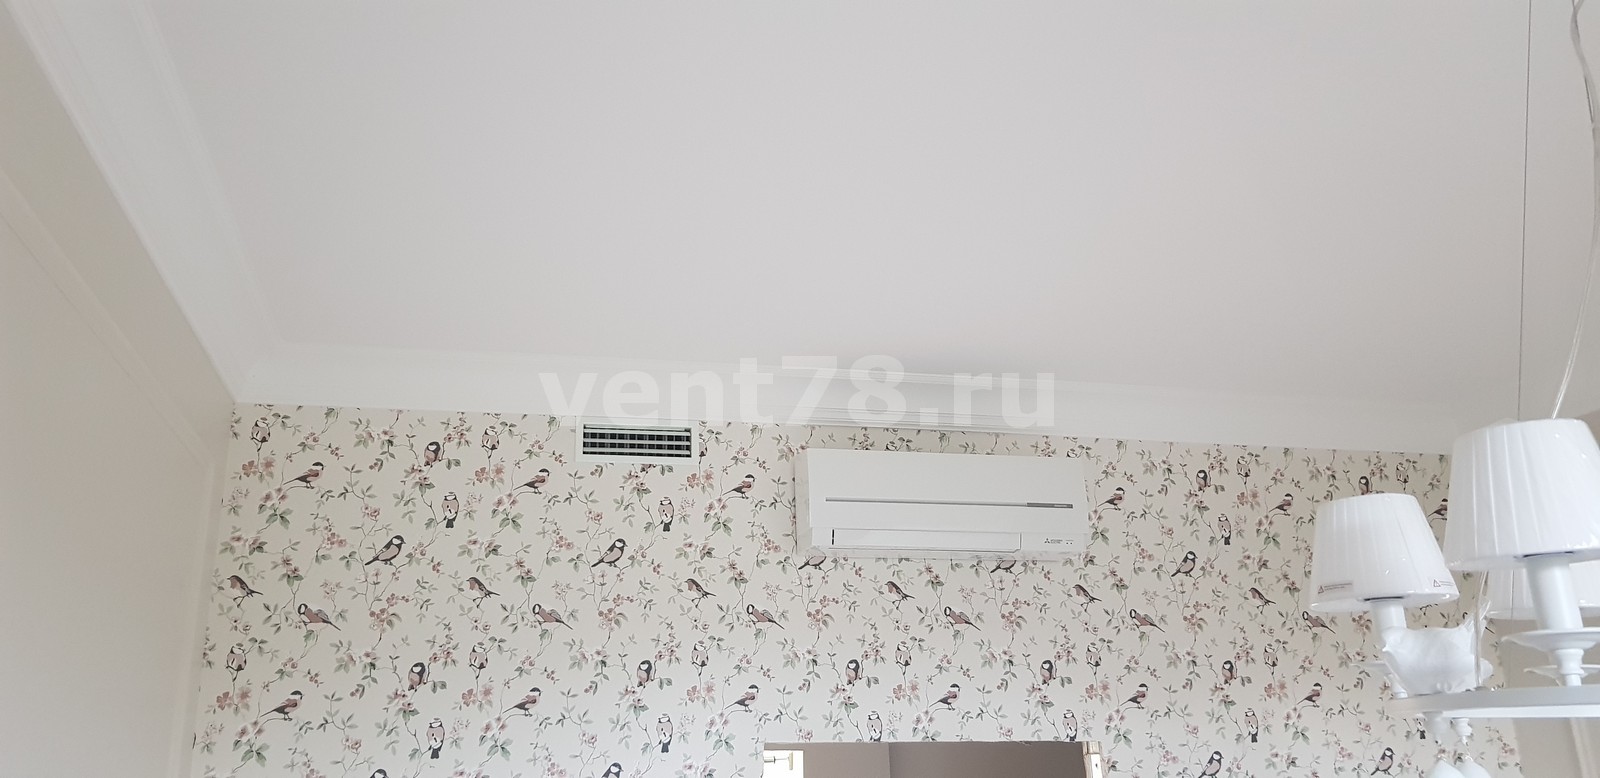 Монтаж систем вентиляции и кондицинирования квартиры.